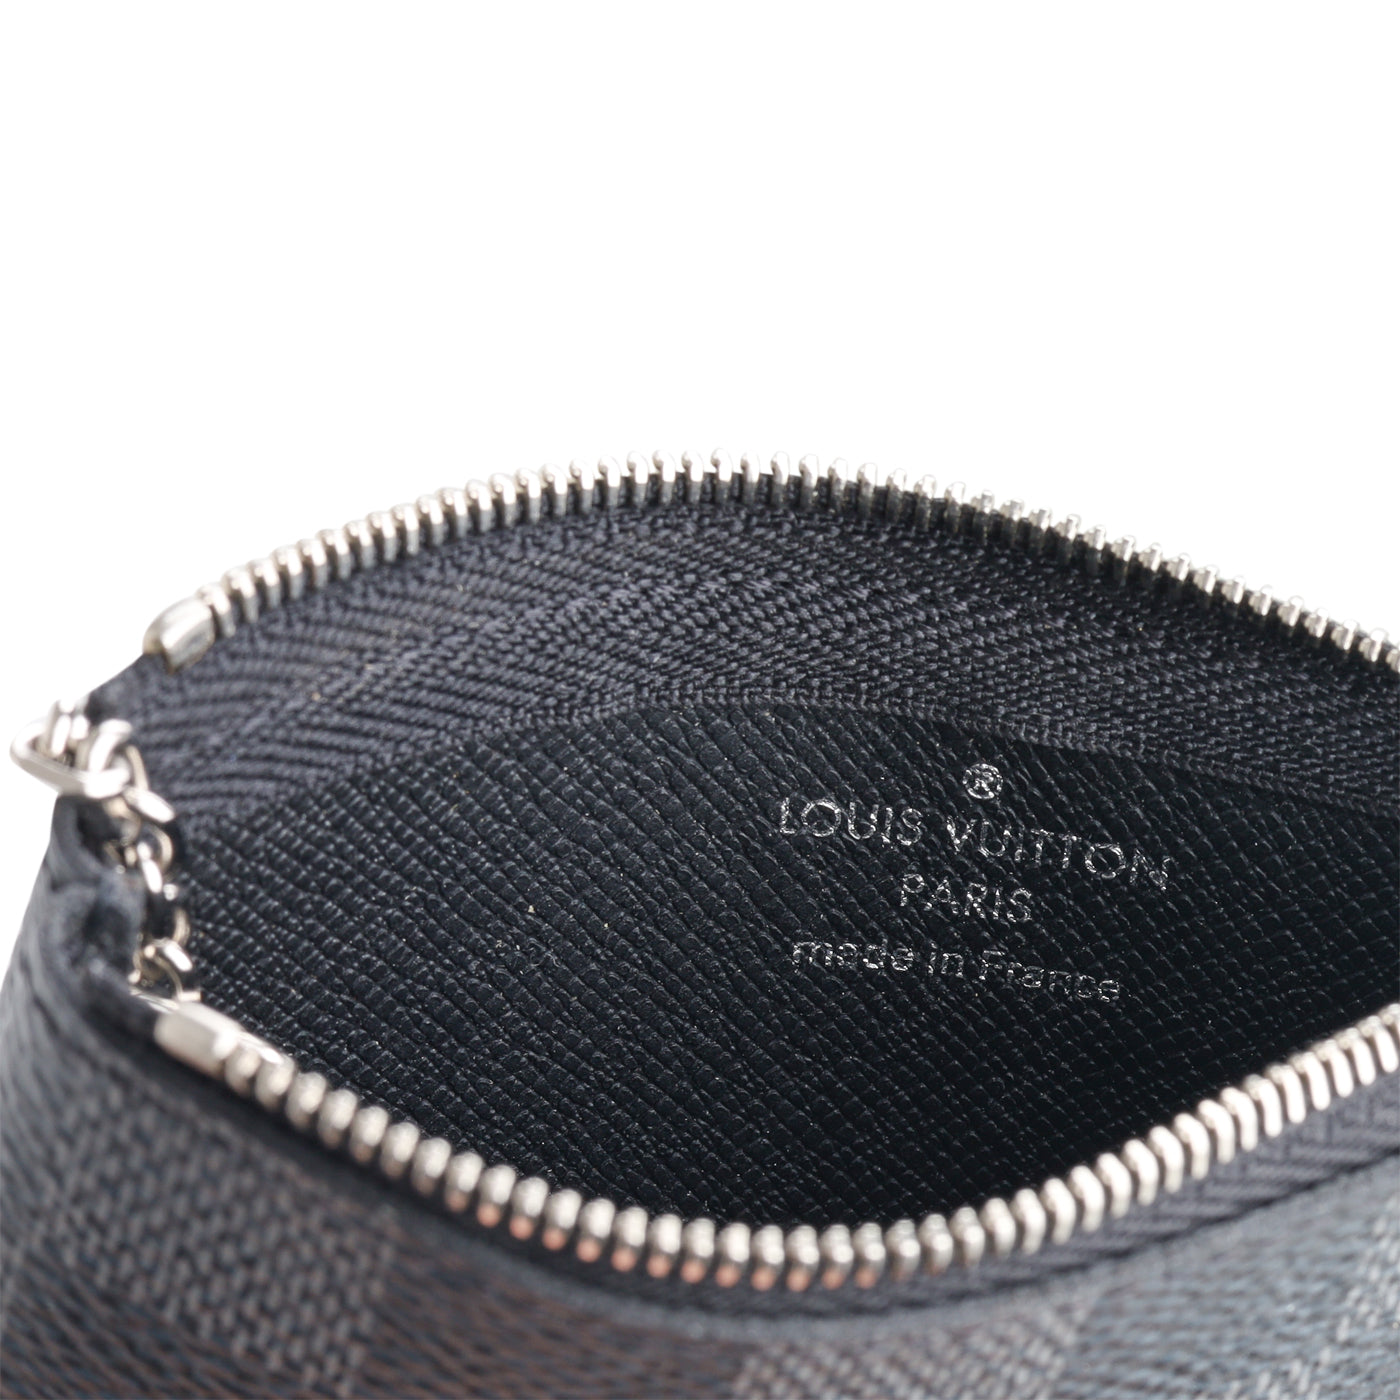 Louis Vuitton, Accessories, Louis Vuitton Key Pouch Graphite